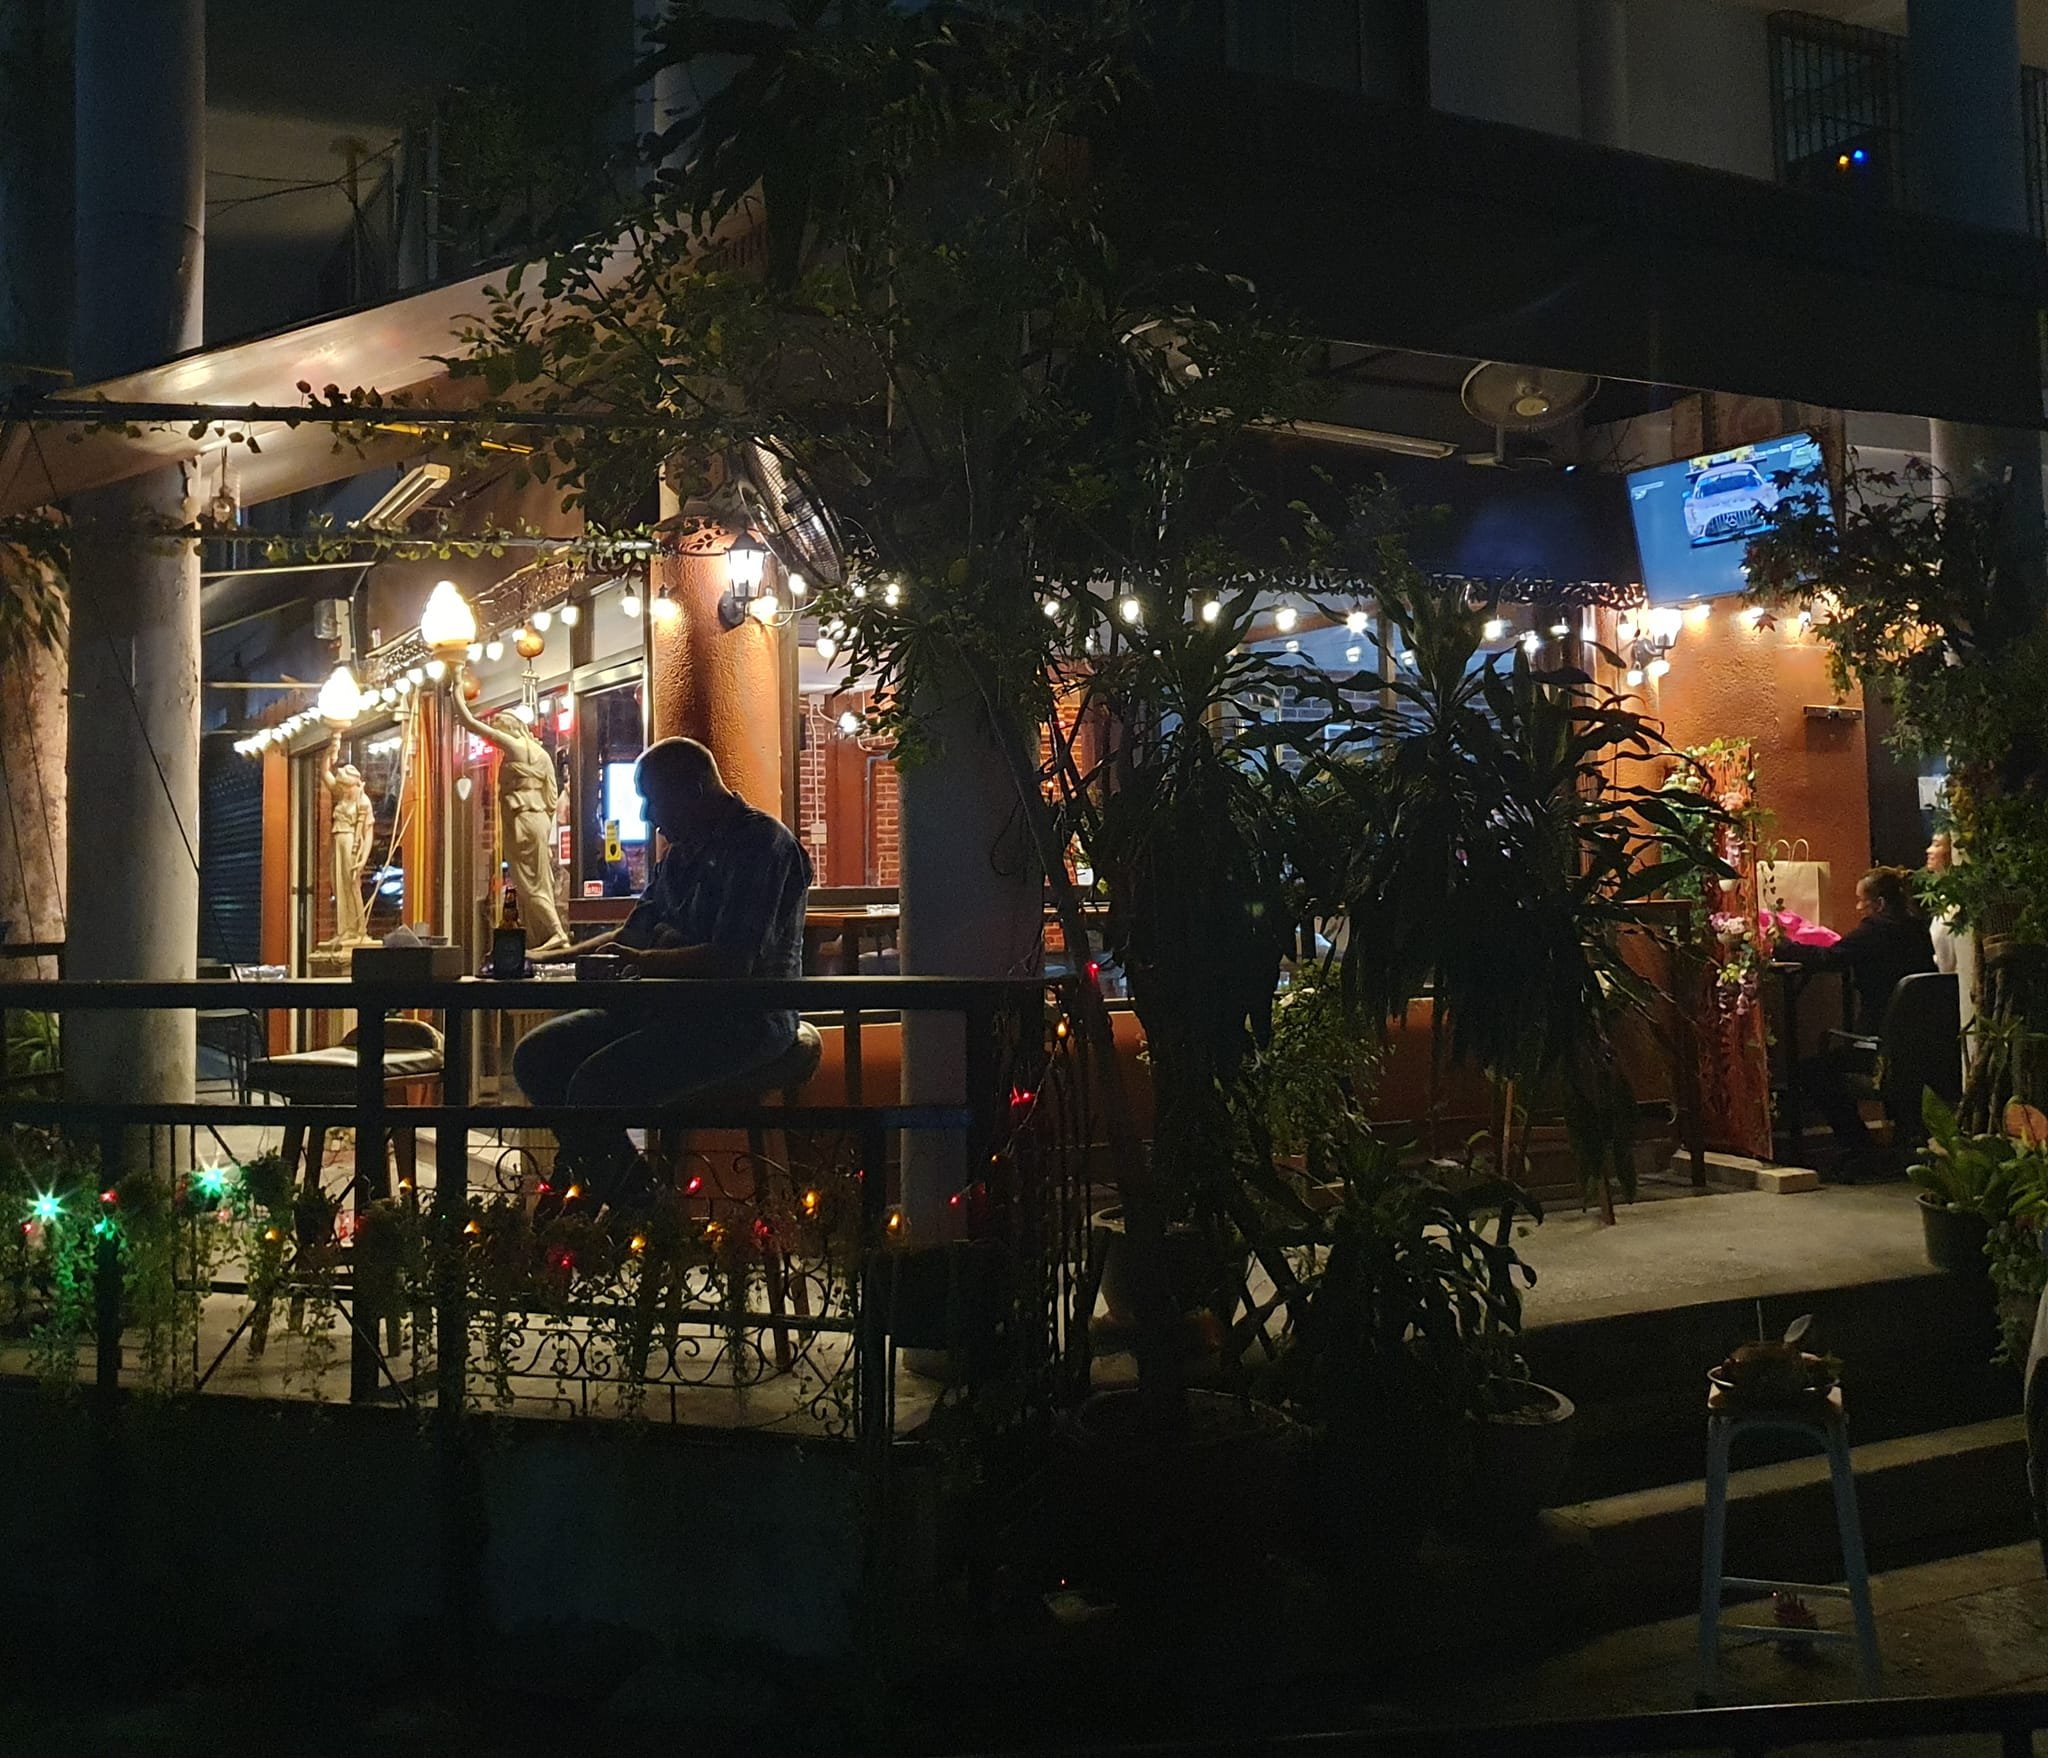 Money's Bar & Restaurant (Money's Bar & Restaurant) : กรุงเทพมหานคร (Bangkok)